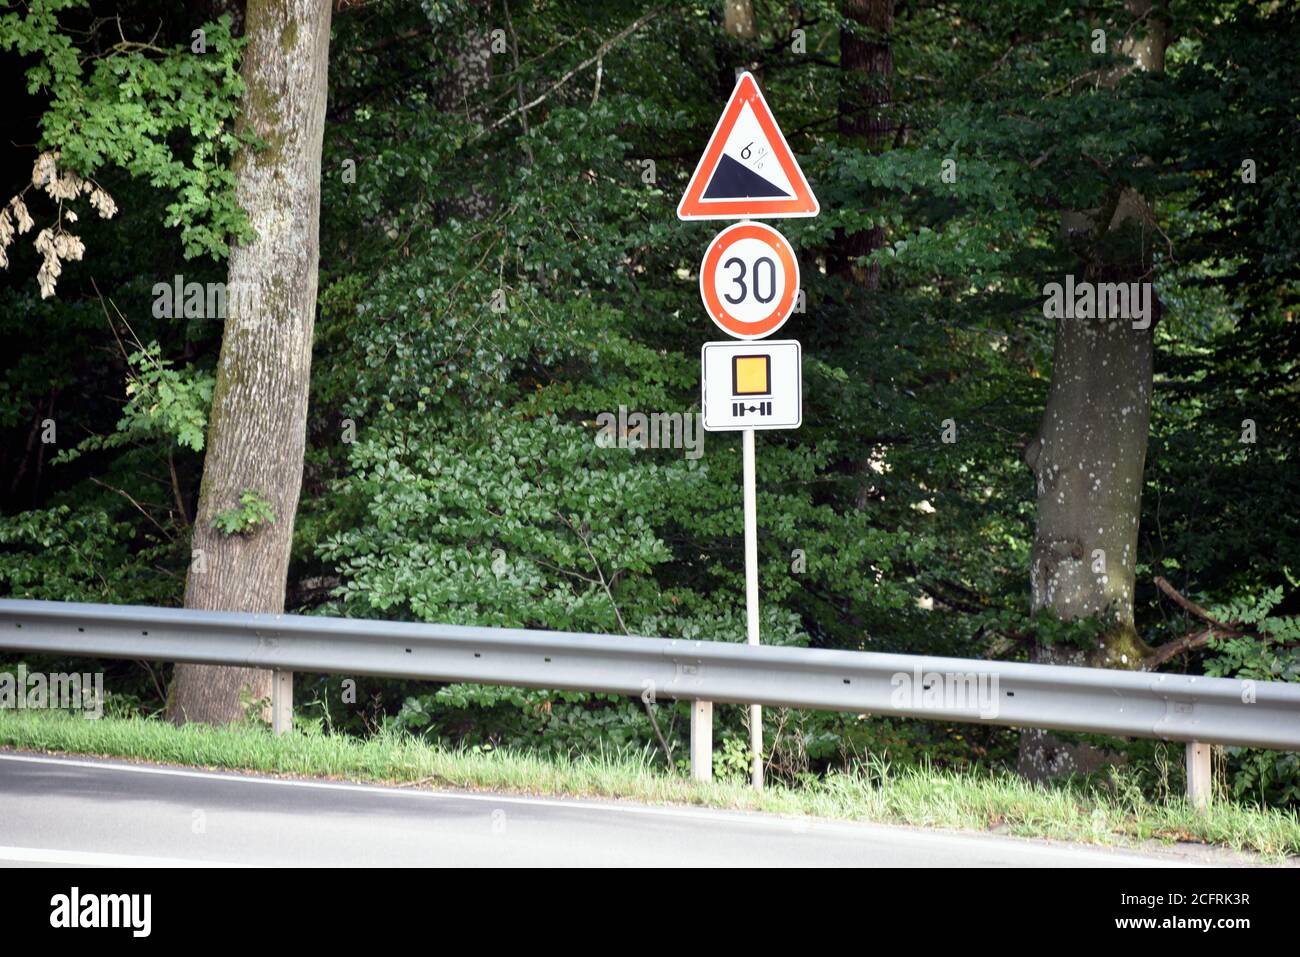 06 septembre 2020, Rhénanie-Palatinat, Prüm: Signalisation routière: Pente de 6% et 30 km/h pour les transporteurs de marchandises dangereuses. Photo: Horst Galuschka/dpa Banque D'Images